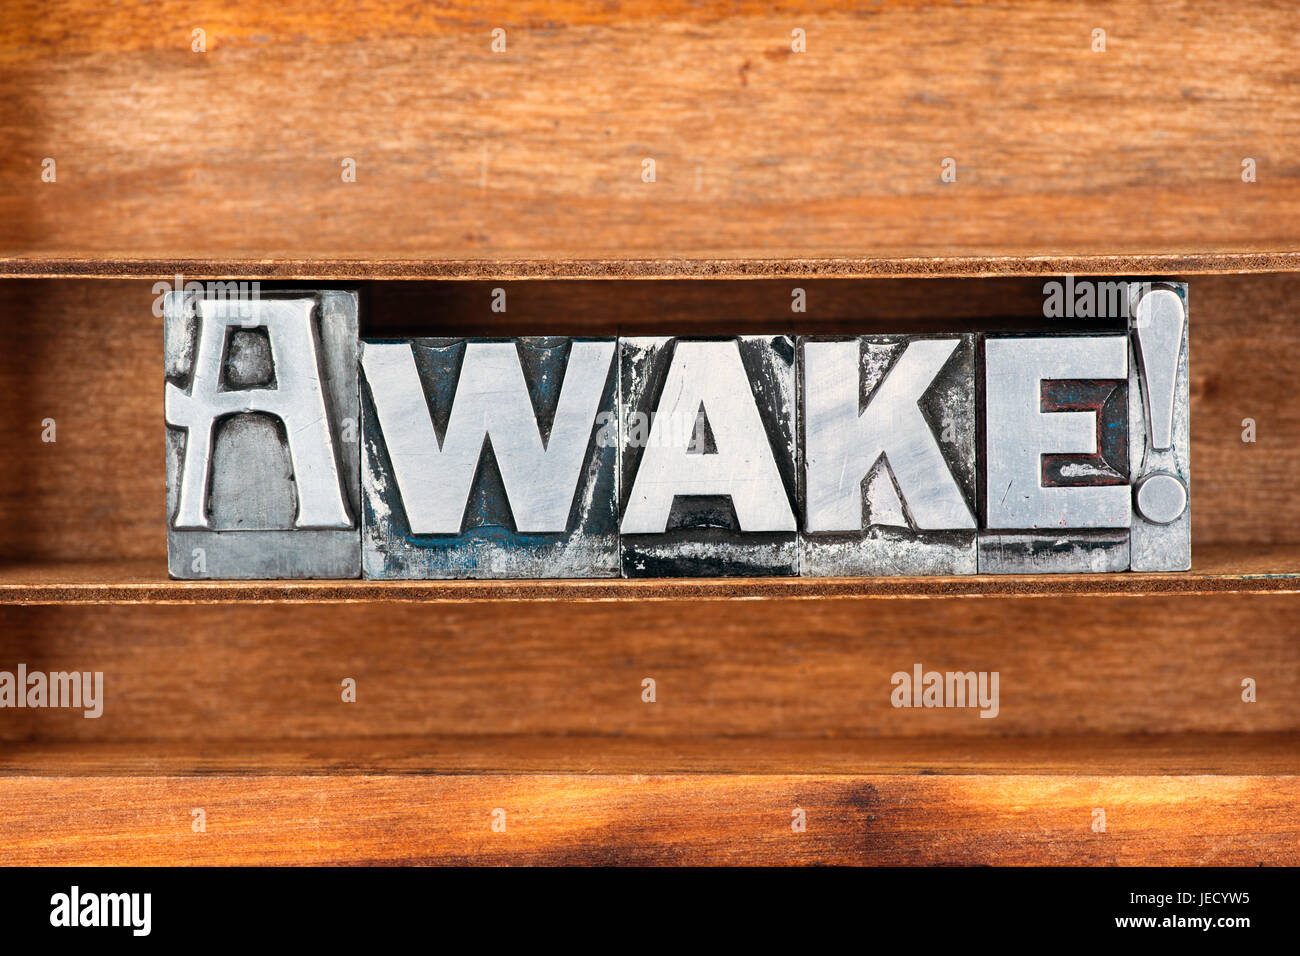 Awake mot mot d'exclamation faite de type typographique métallique sur plateau en bois Banque D'Images